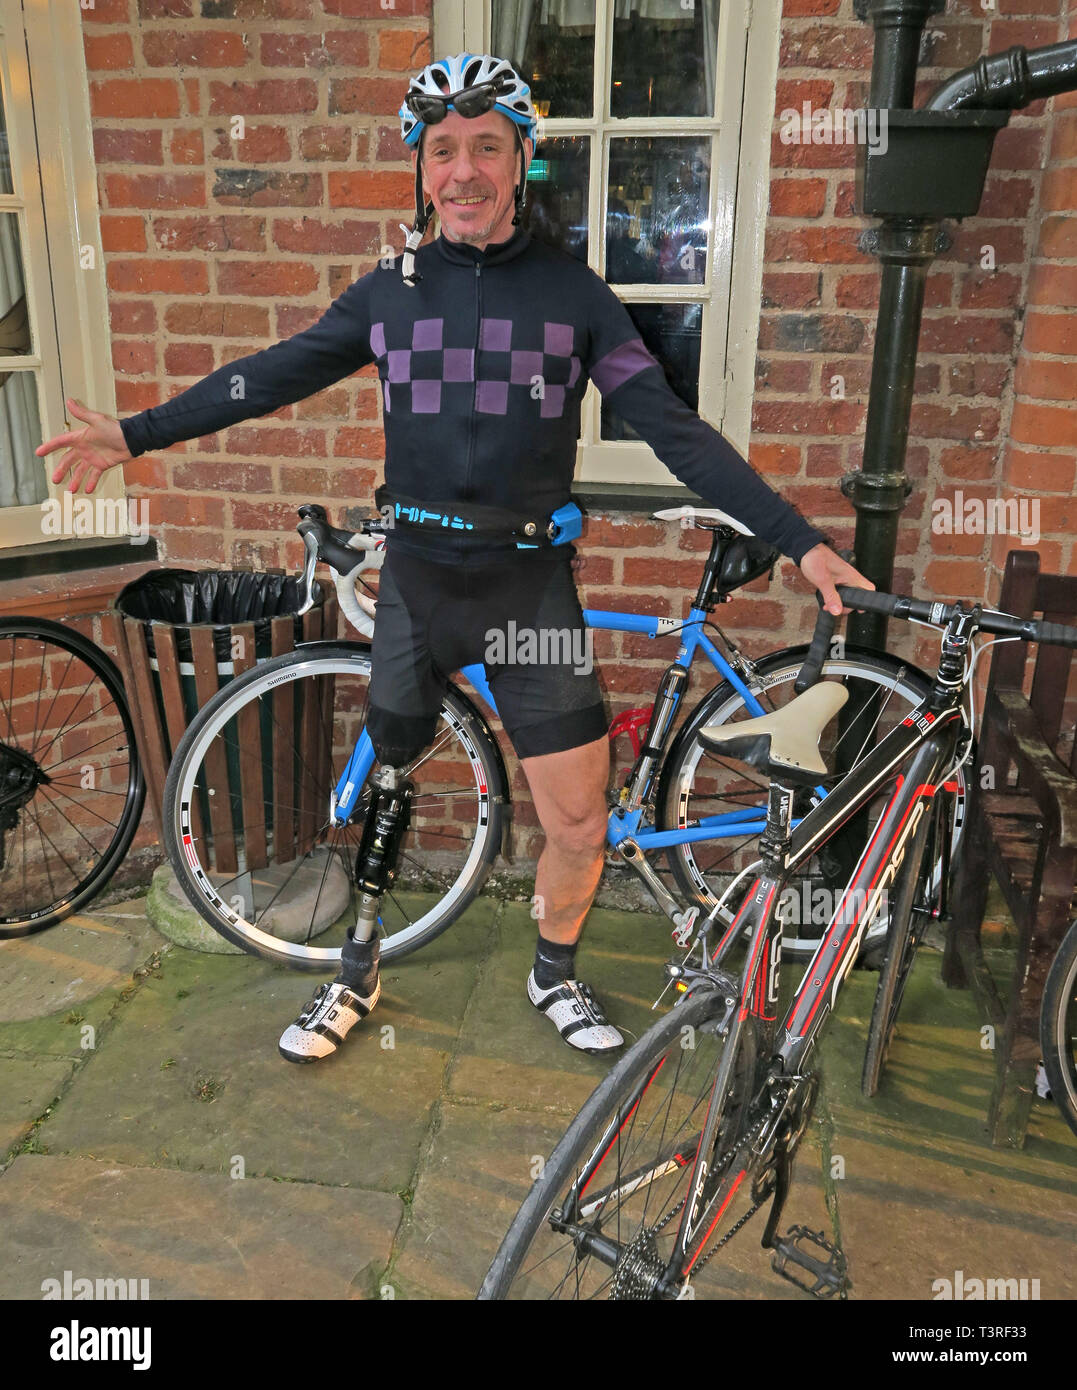 Keith, cycliste à vélo avec une jambe prothétique, en Lycra vêtements de cyclisme, à la Vine Inn, Barns Lane, Dunham Town, Cheshire, Angleterre, ROYAUME-UNI, WA14 5RU Banque D'Images